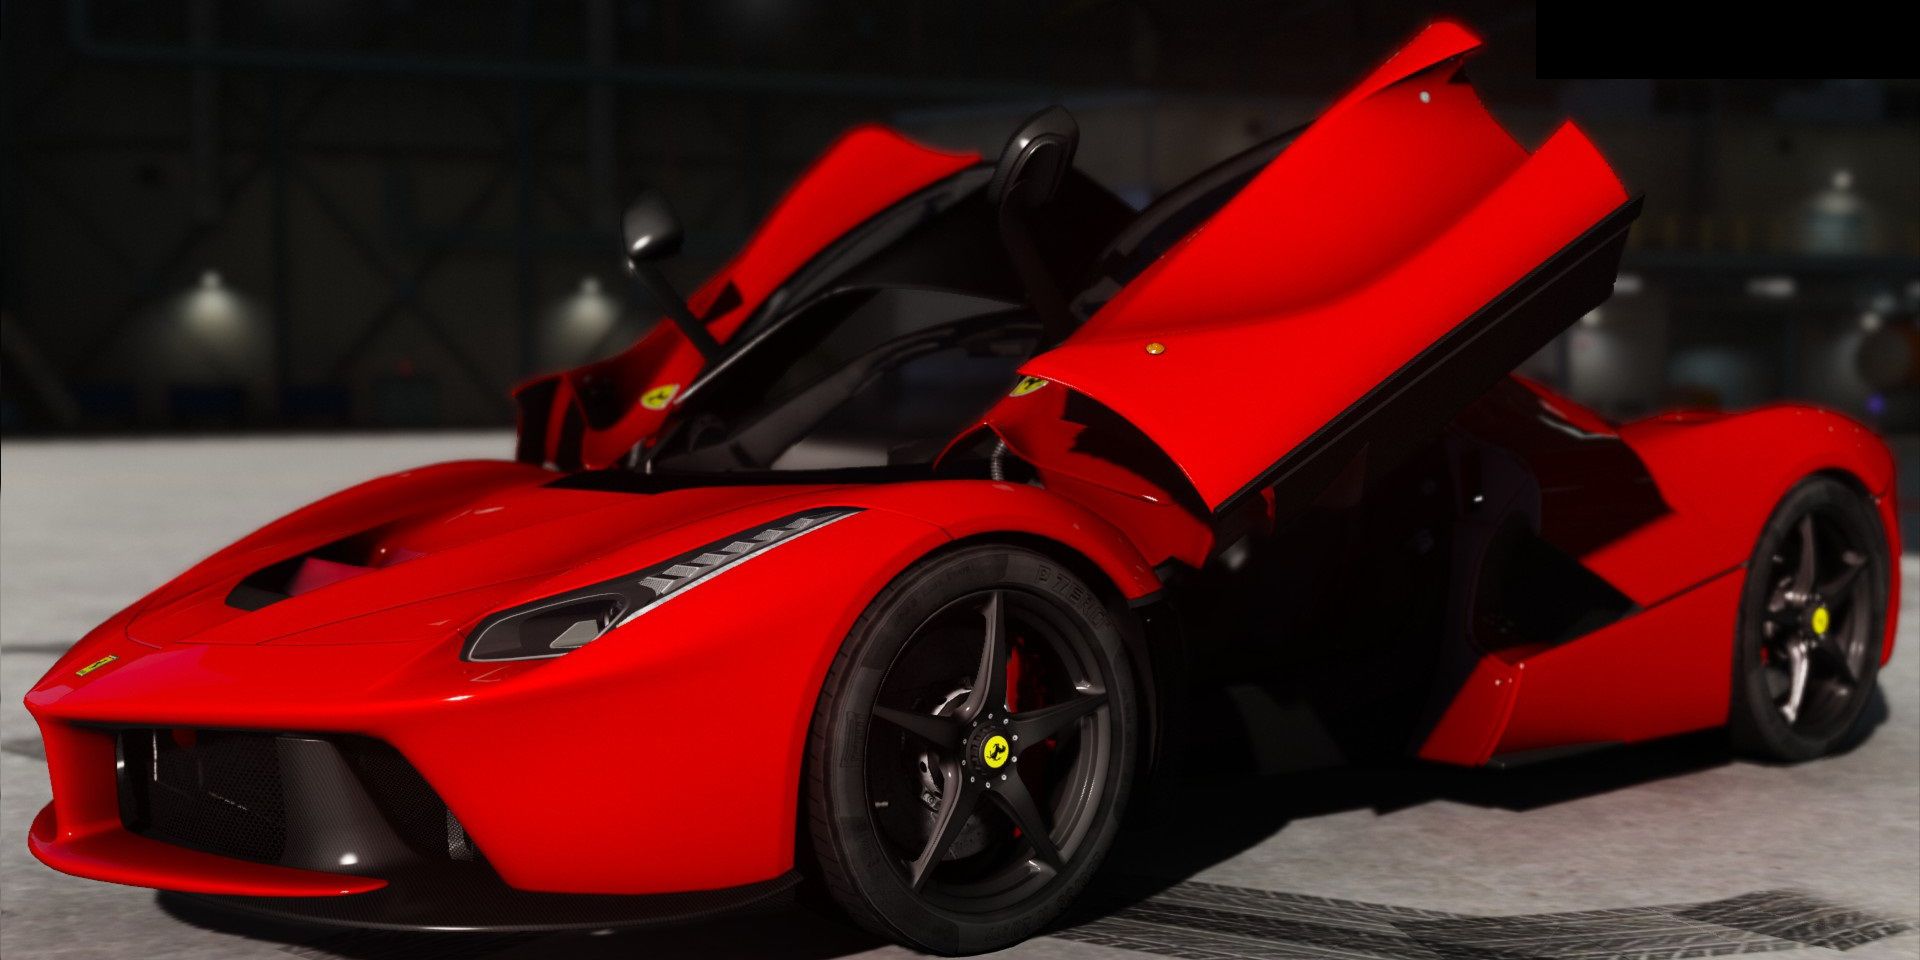 A Ferrari mod for Grand Theft Auto V